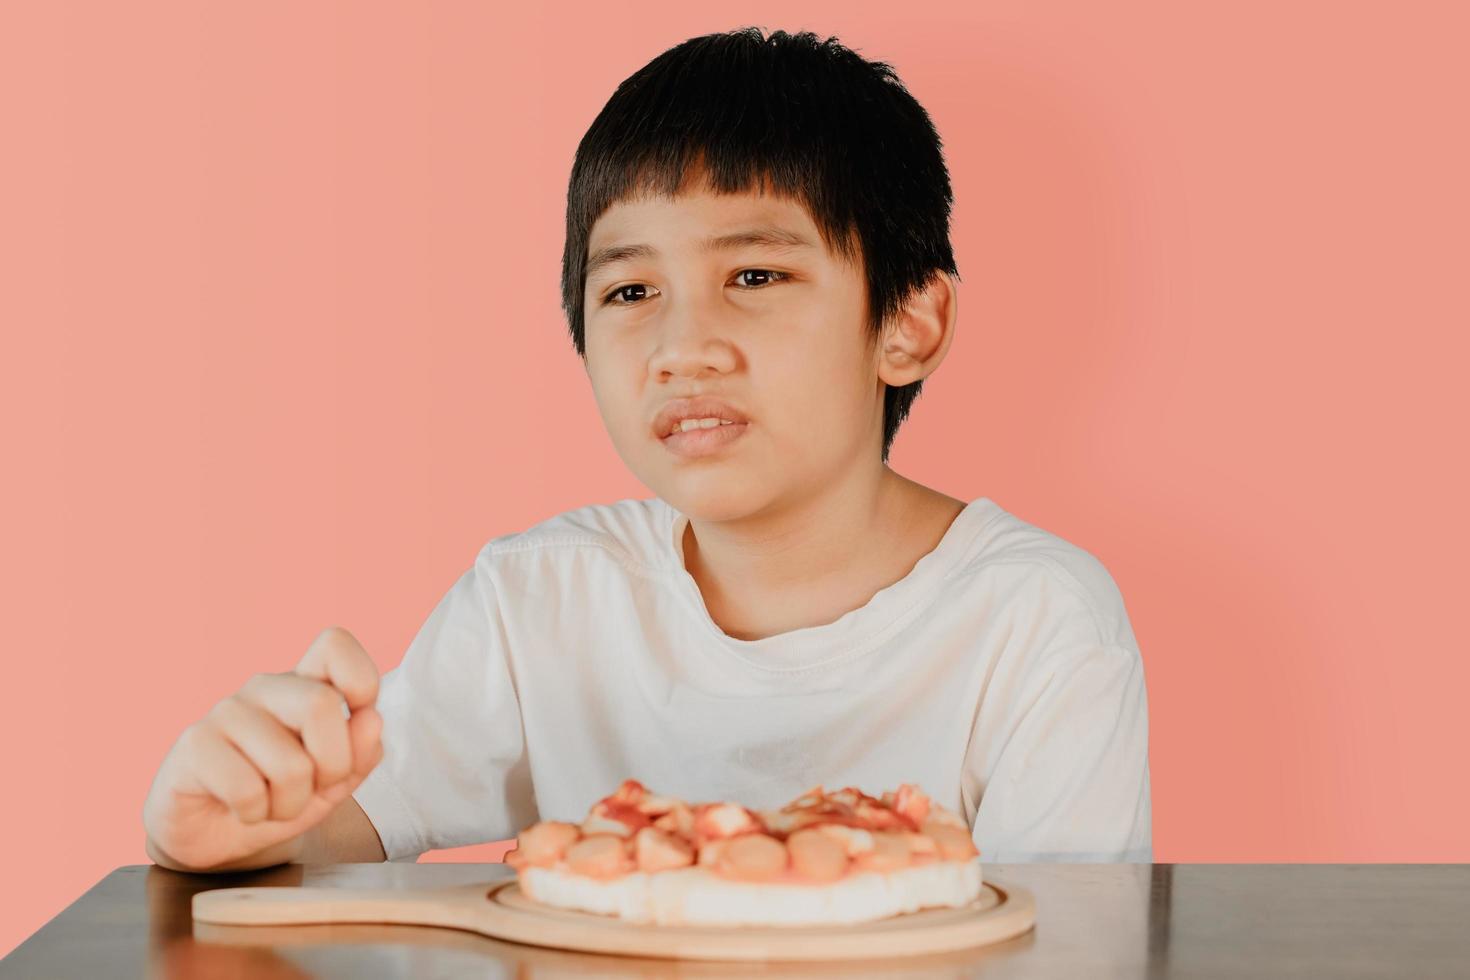 garçon mignon asiatique assis à la table à manger avec une pizza sur la table devant photo